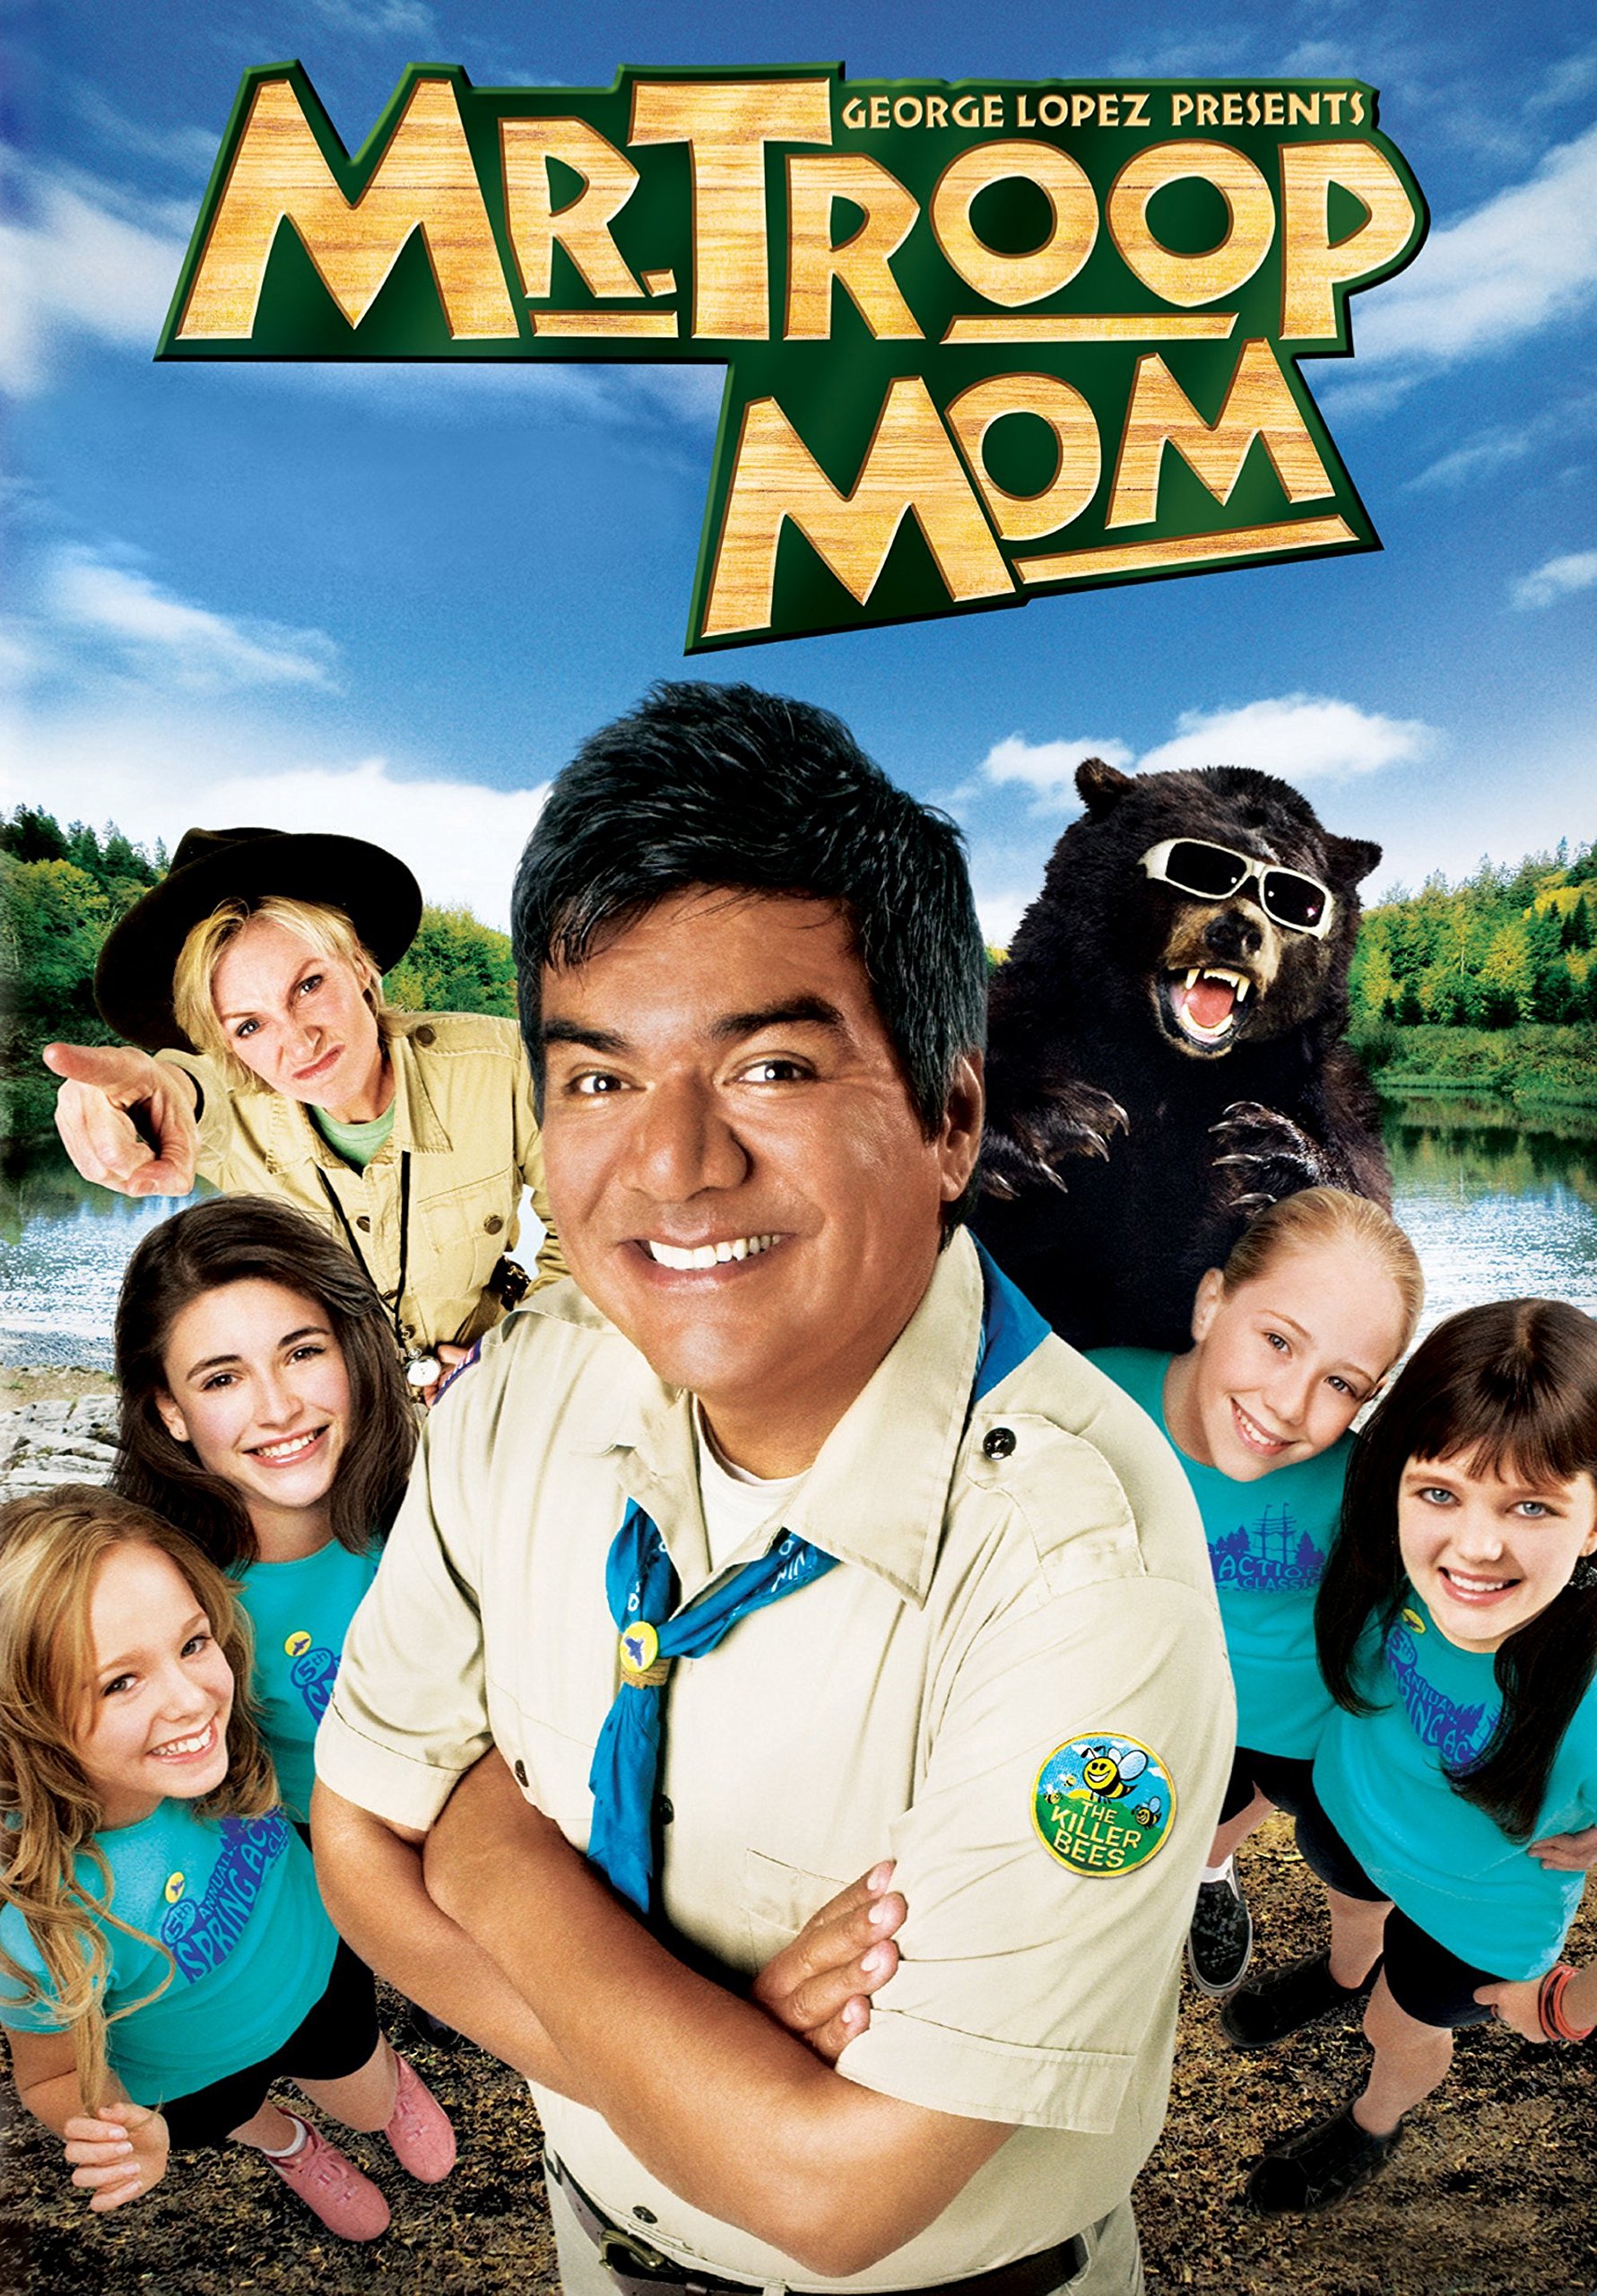 Mr. Troop Mom (2009) starring George Lopez on DVD on DVD